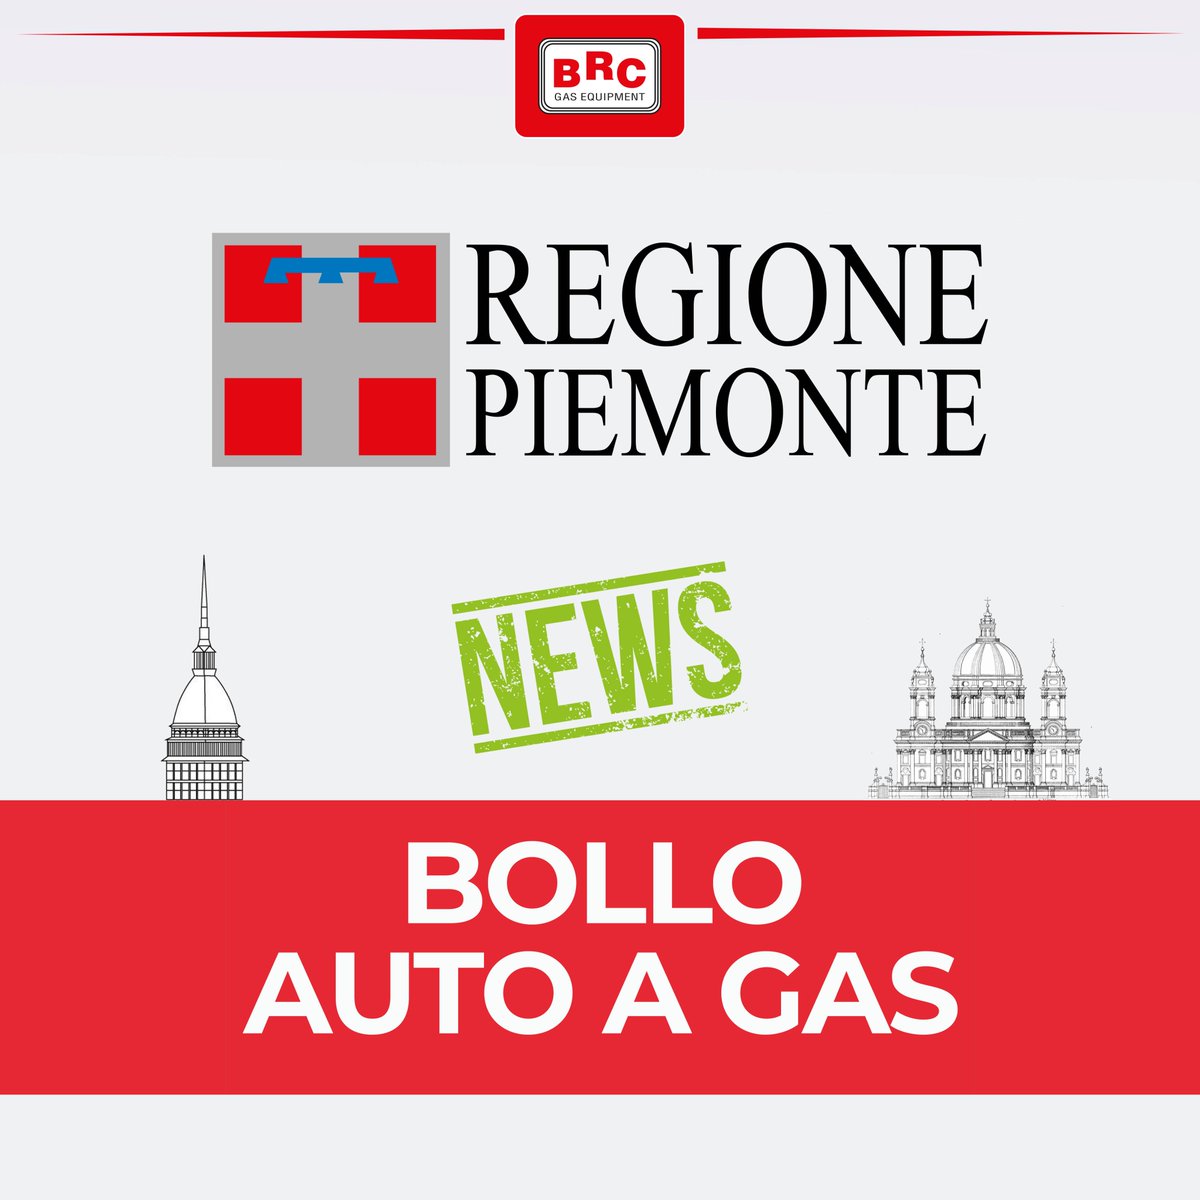 Bollo auto Regione Piemonte, alcune novità‼️ Leggi di più al seguente link: brc.it/.../auto-a-gas… #GPL #impiantigas #impiantigpl #regionepiemonte #bollogratuito #bolloauto #esenzione #metano #risparmio #sicurezza #ecologia #affidabilità